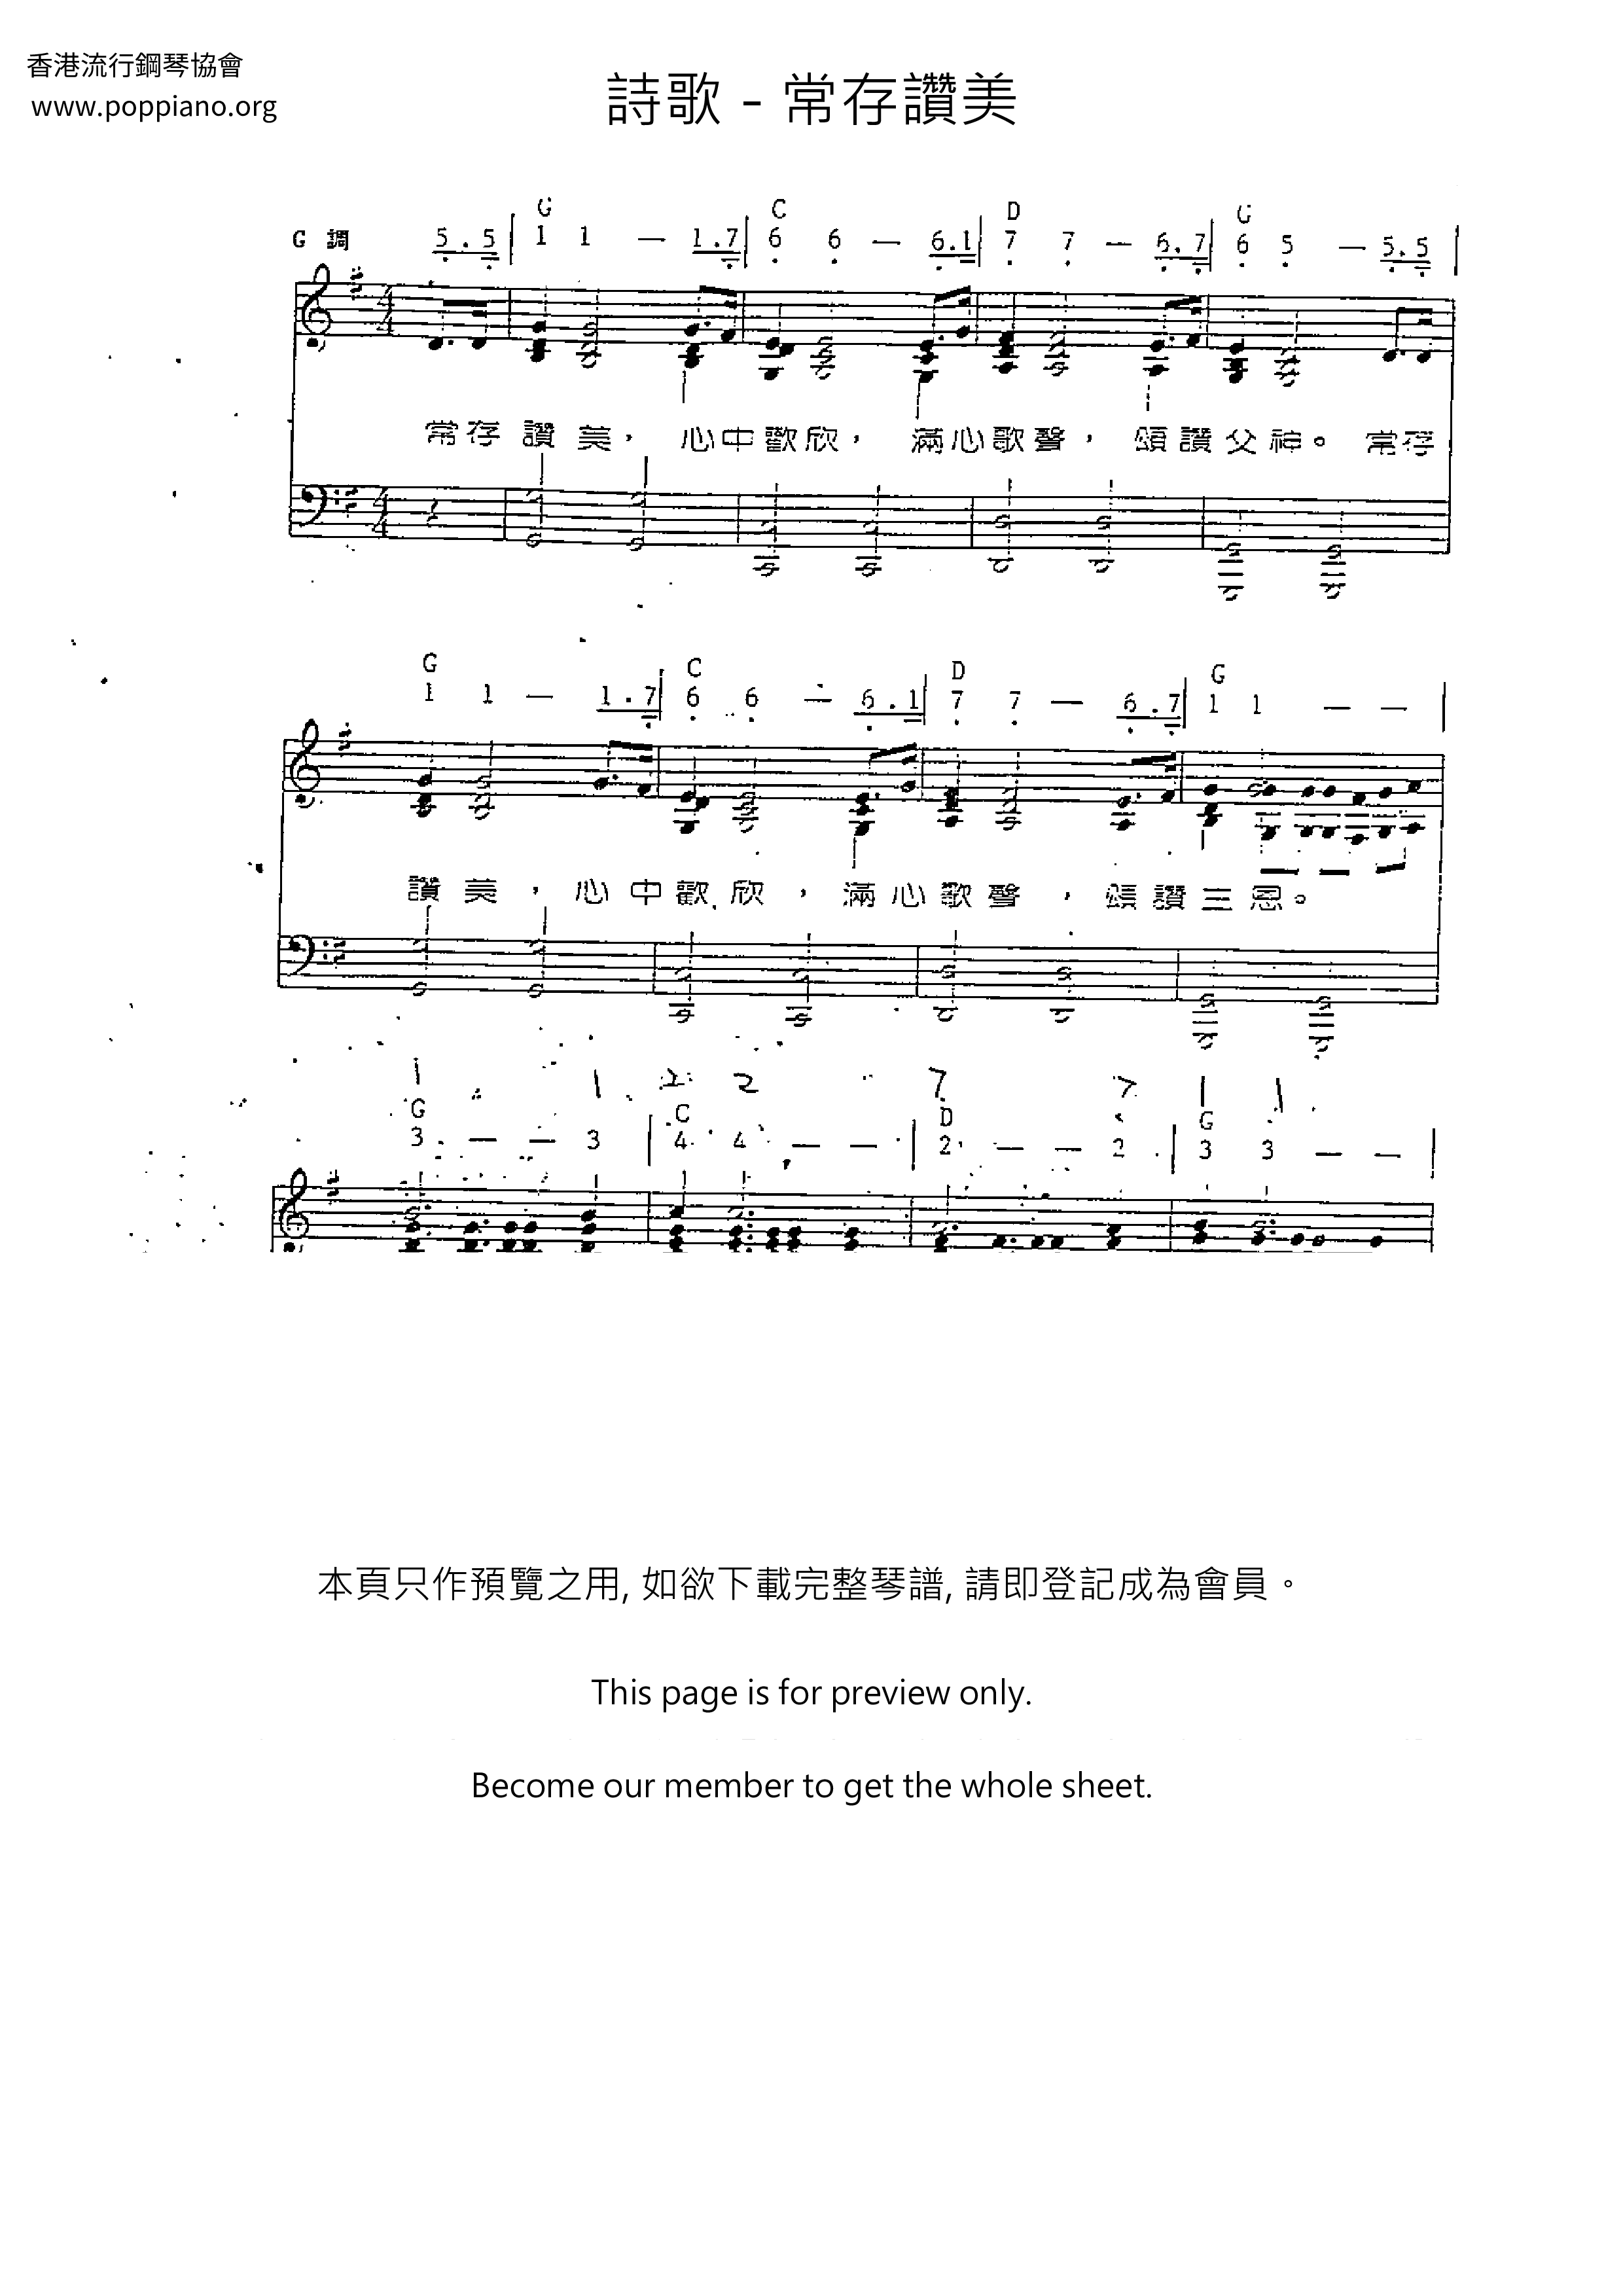 Chang Cun Praise Score